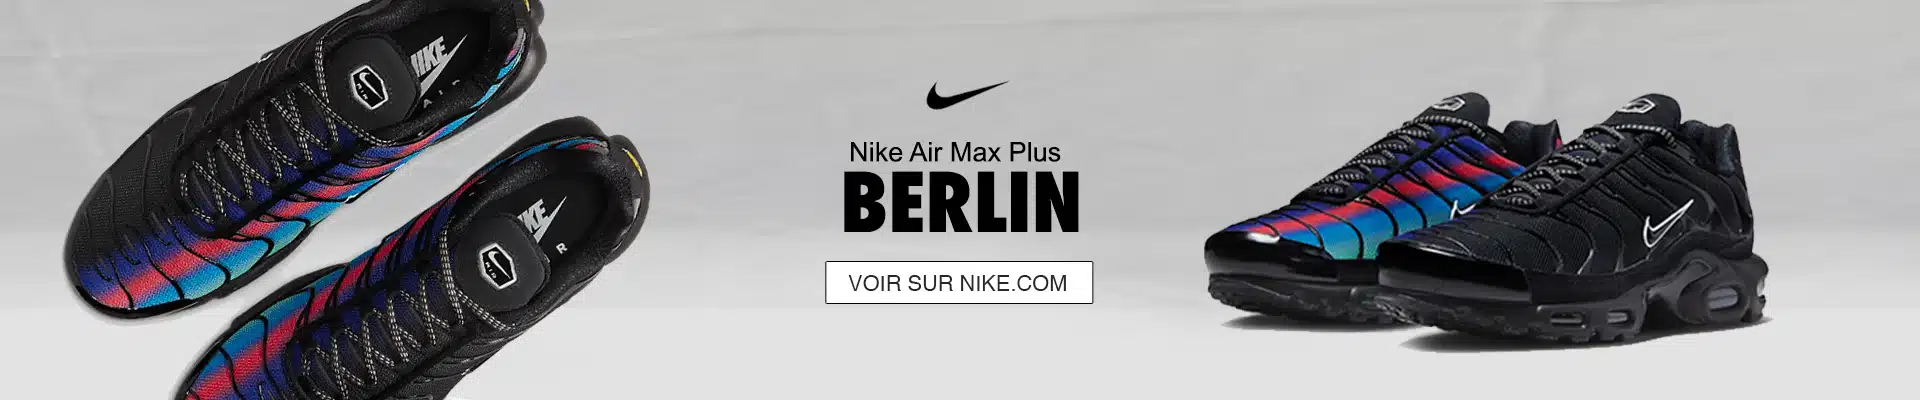 Air Max Plus Berlin